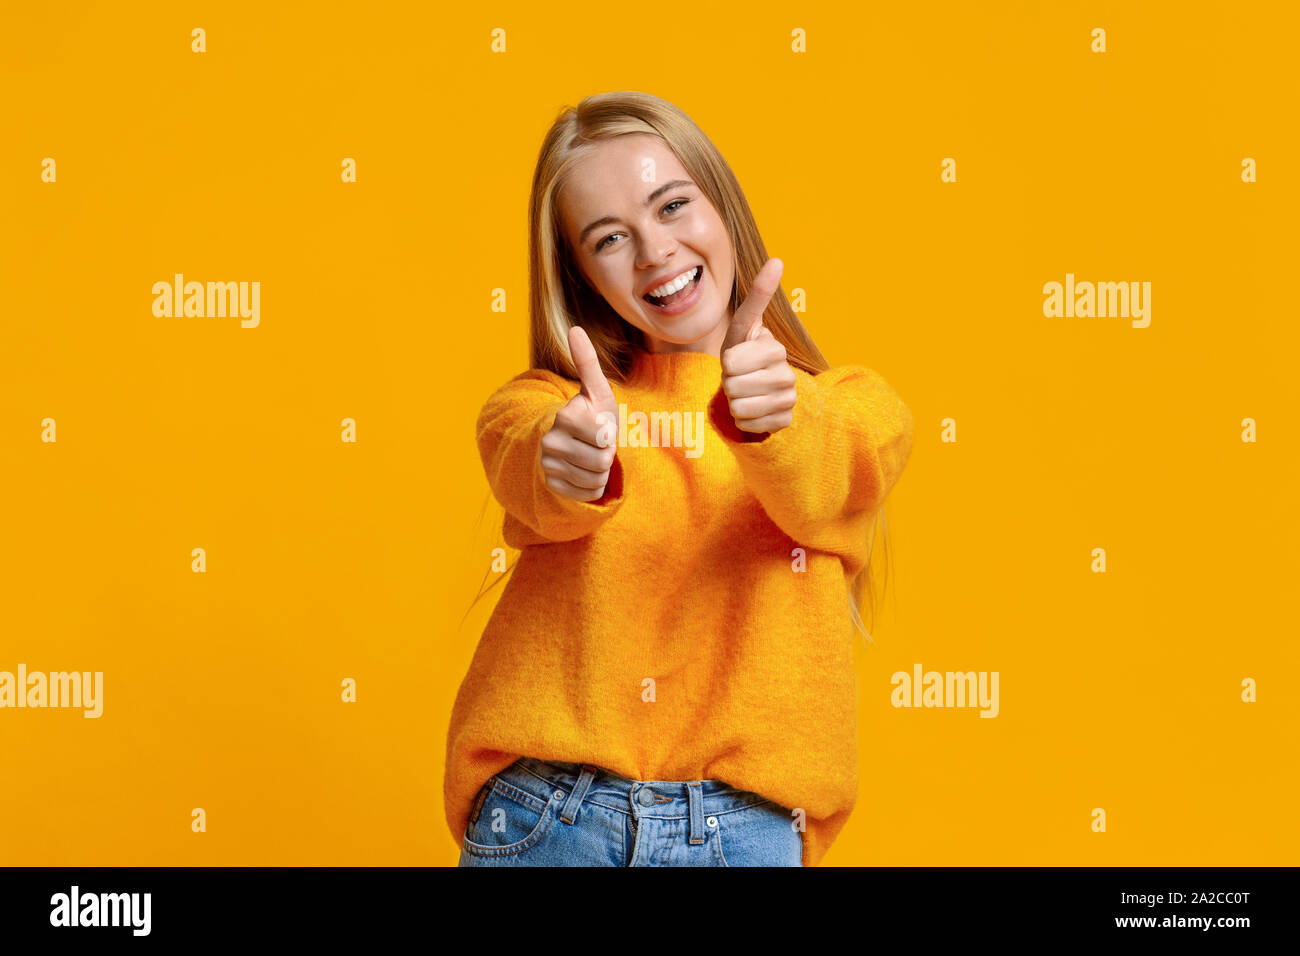 Gioiosa ragazza adolescente che mostra Thumbs up su sfondo arancione Foto Stock